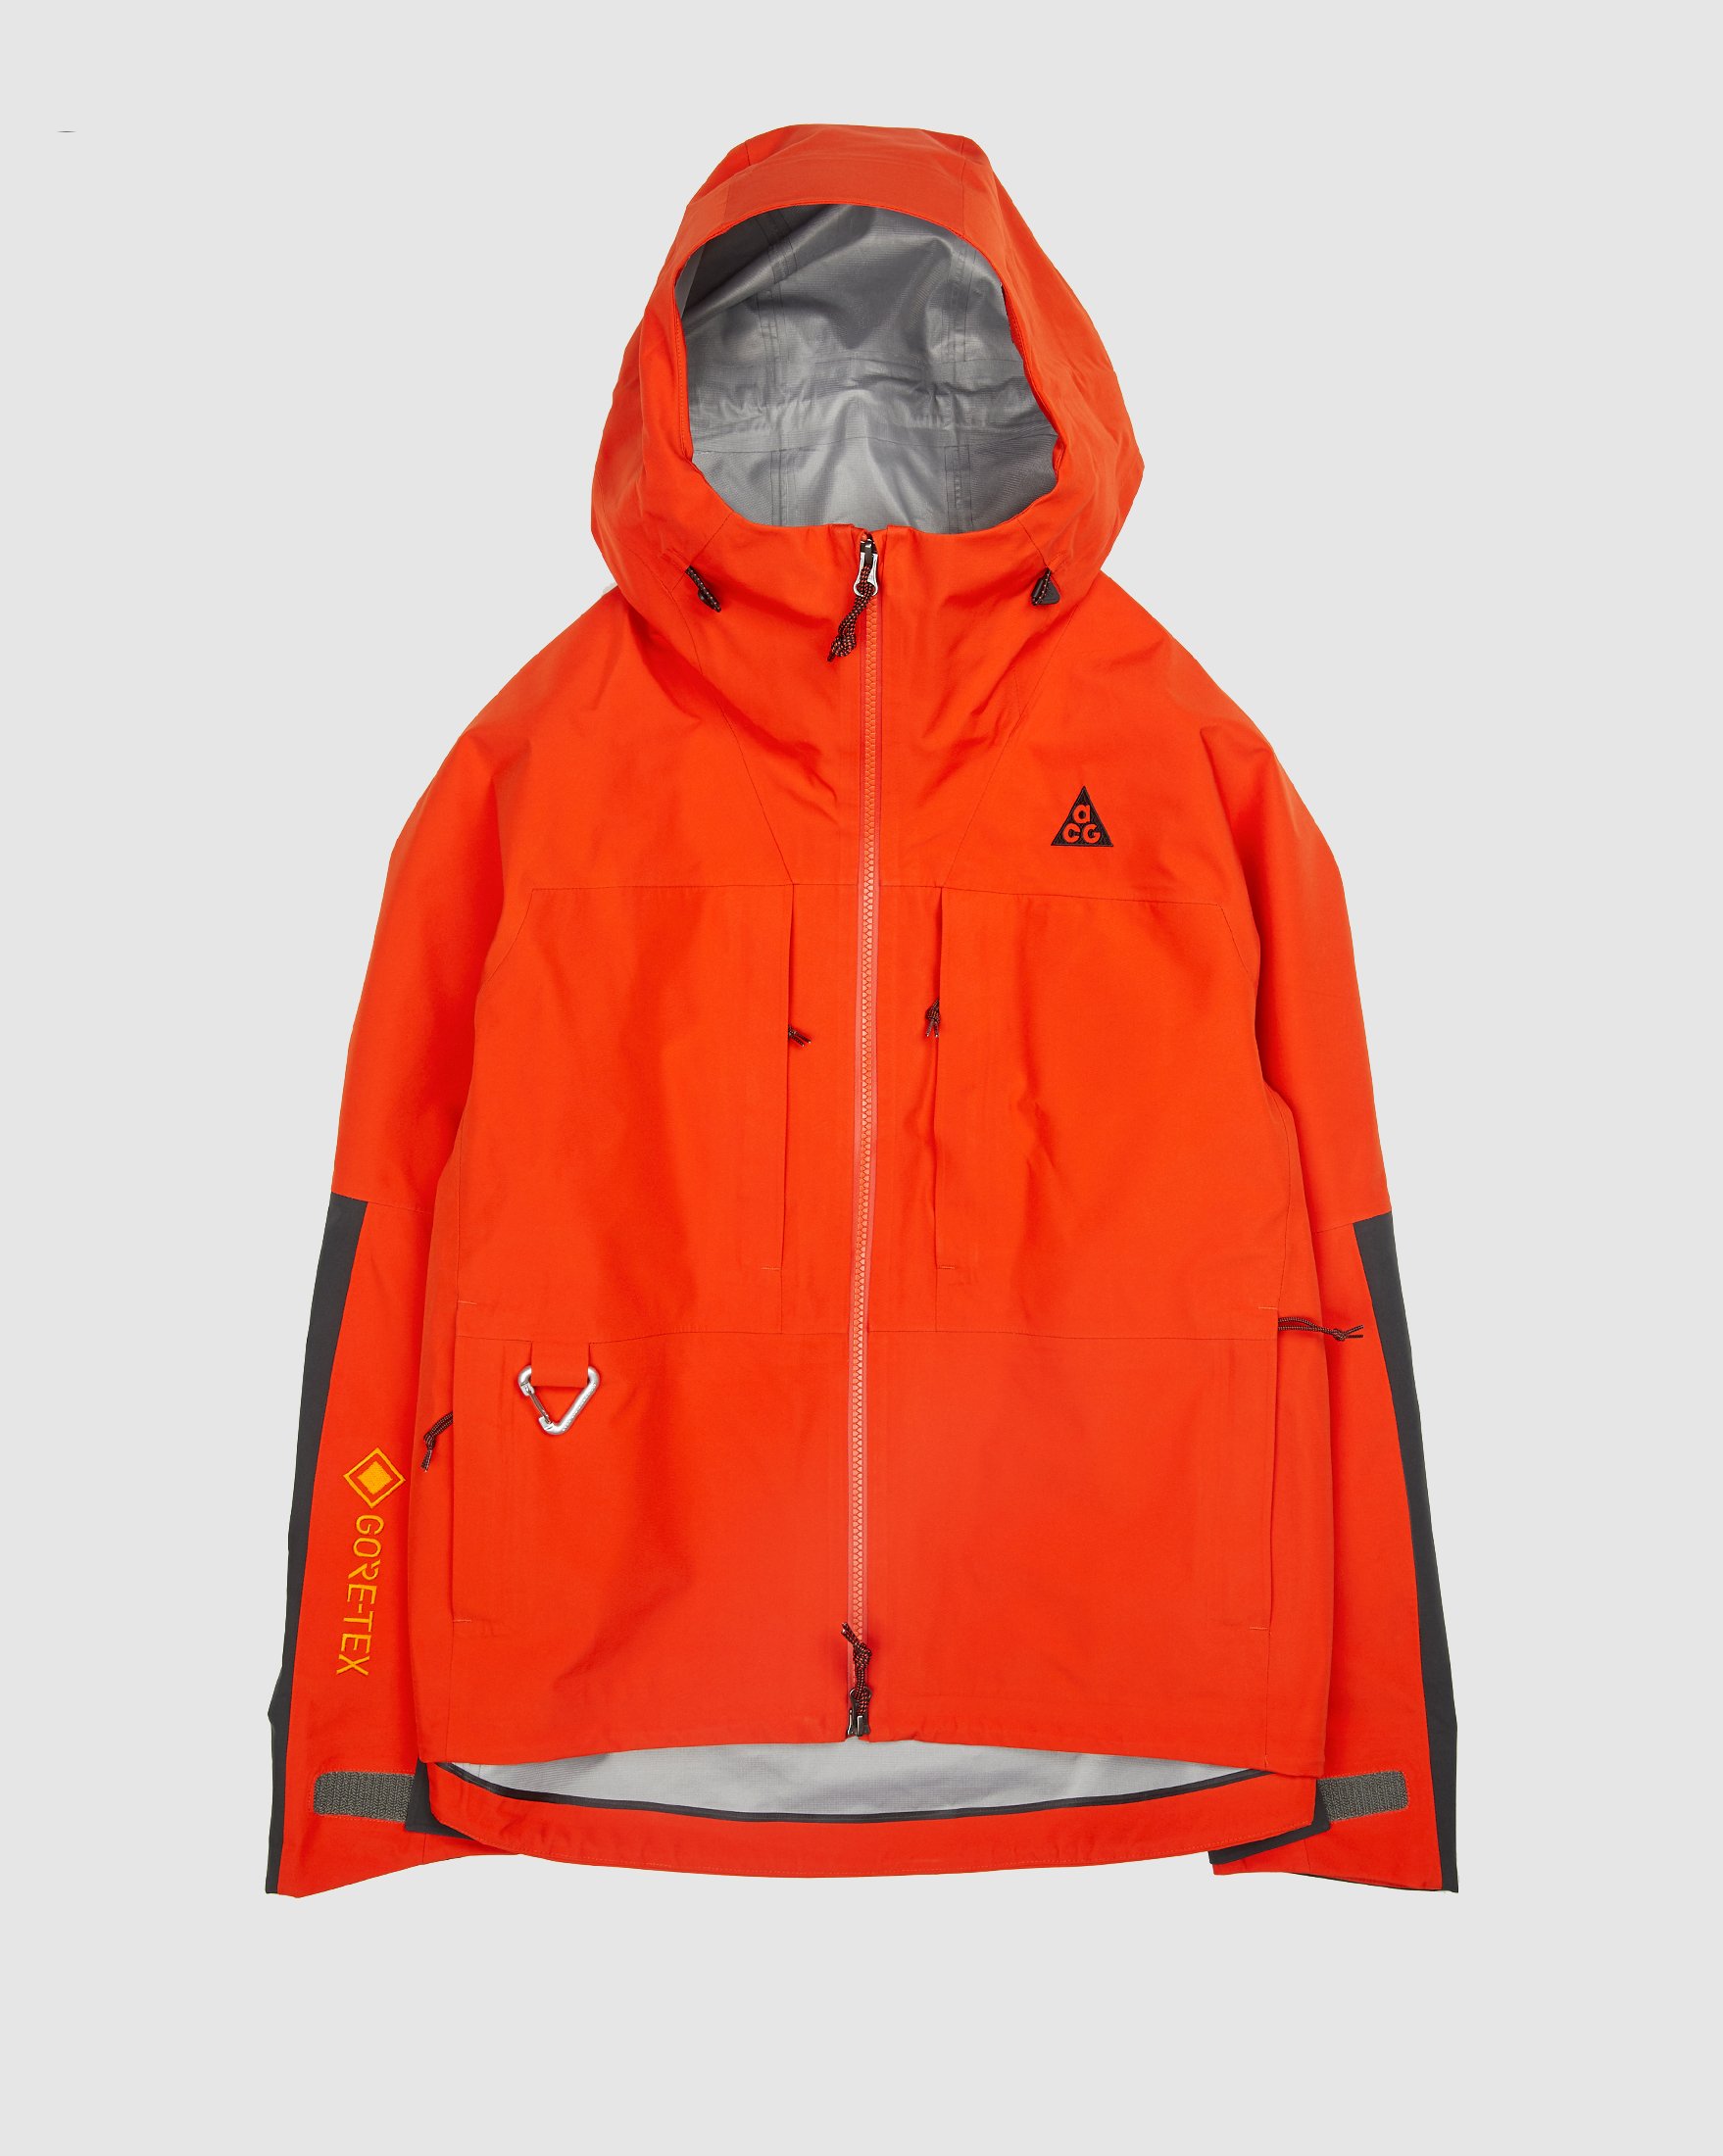 Nike ACG - Gore-Tex "Misery Ridge" Women's Jacket Orange - Clothing - Orange - Image 1